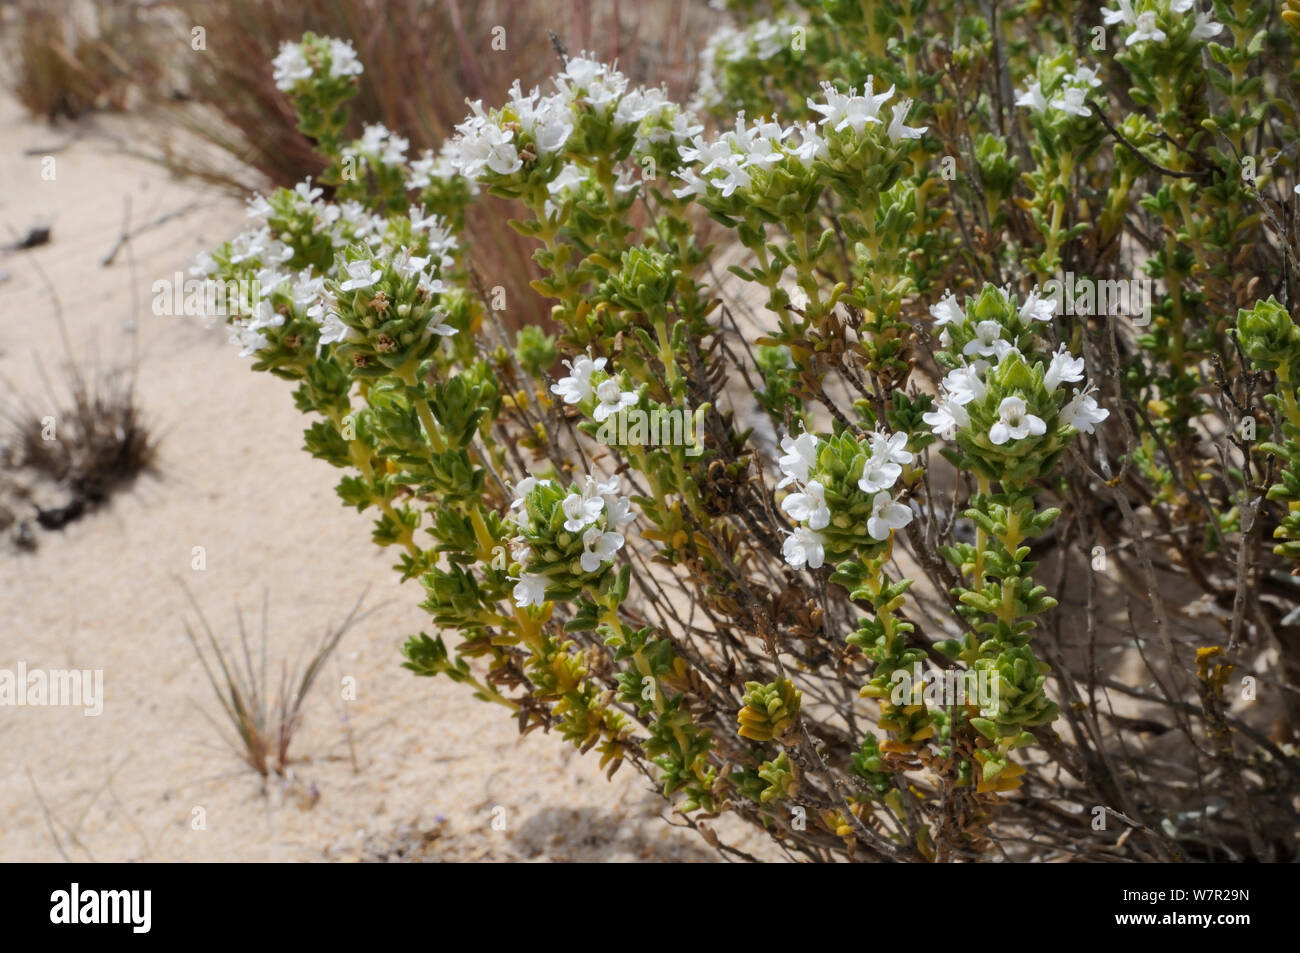 Le thym (Thymus carnosus portugais) une espèce endémique au sud du Portugal, la floraison dans les dunes de sable. L'île de Culatra, Parque Natural da Ria Formosa, Olhao, Algarve, Portugal, juin. Banque D'Images